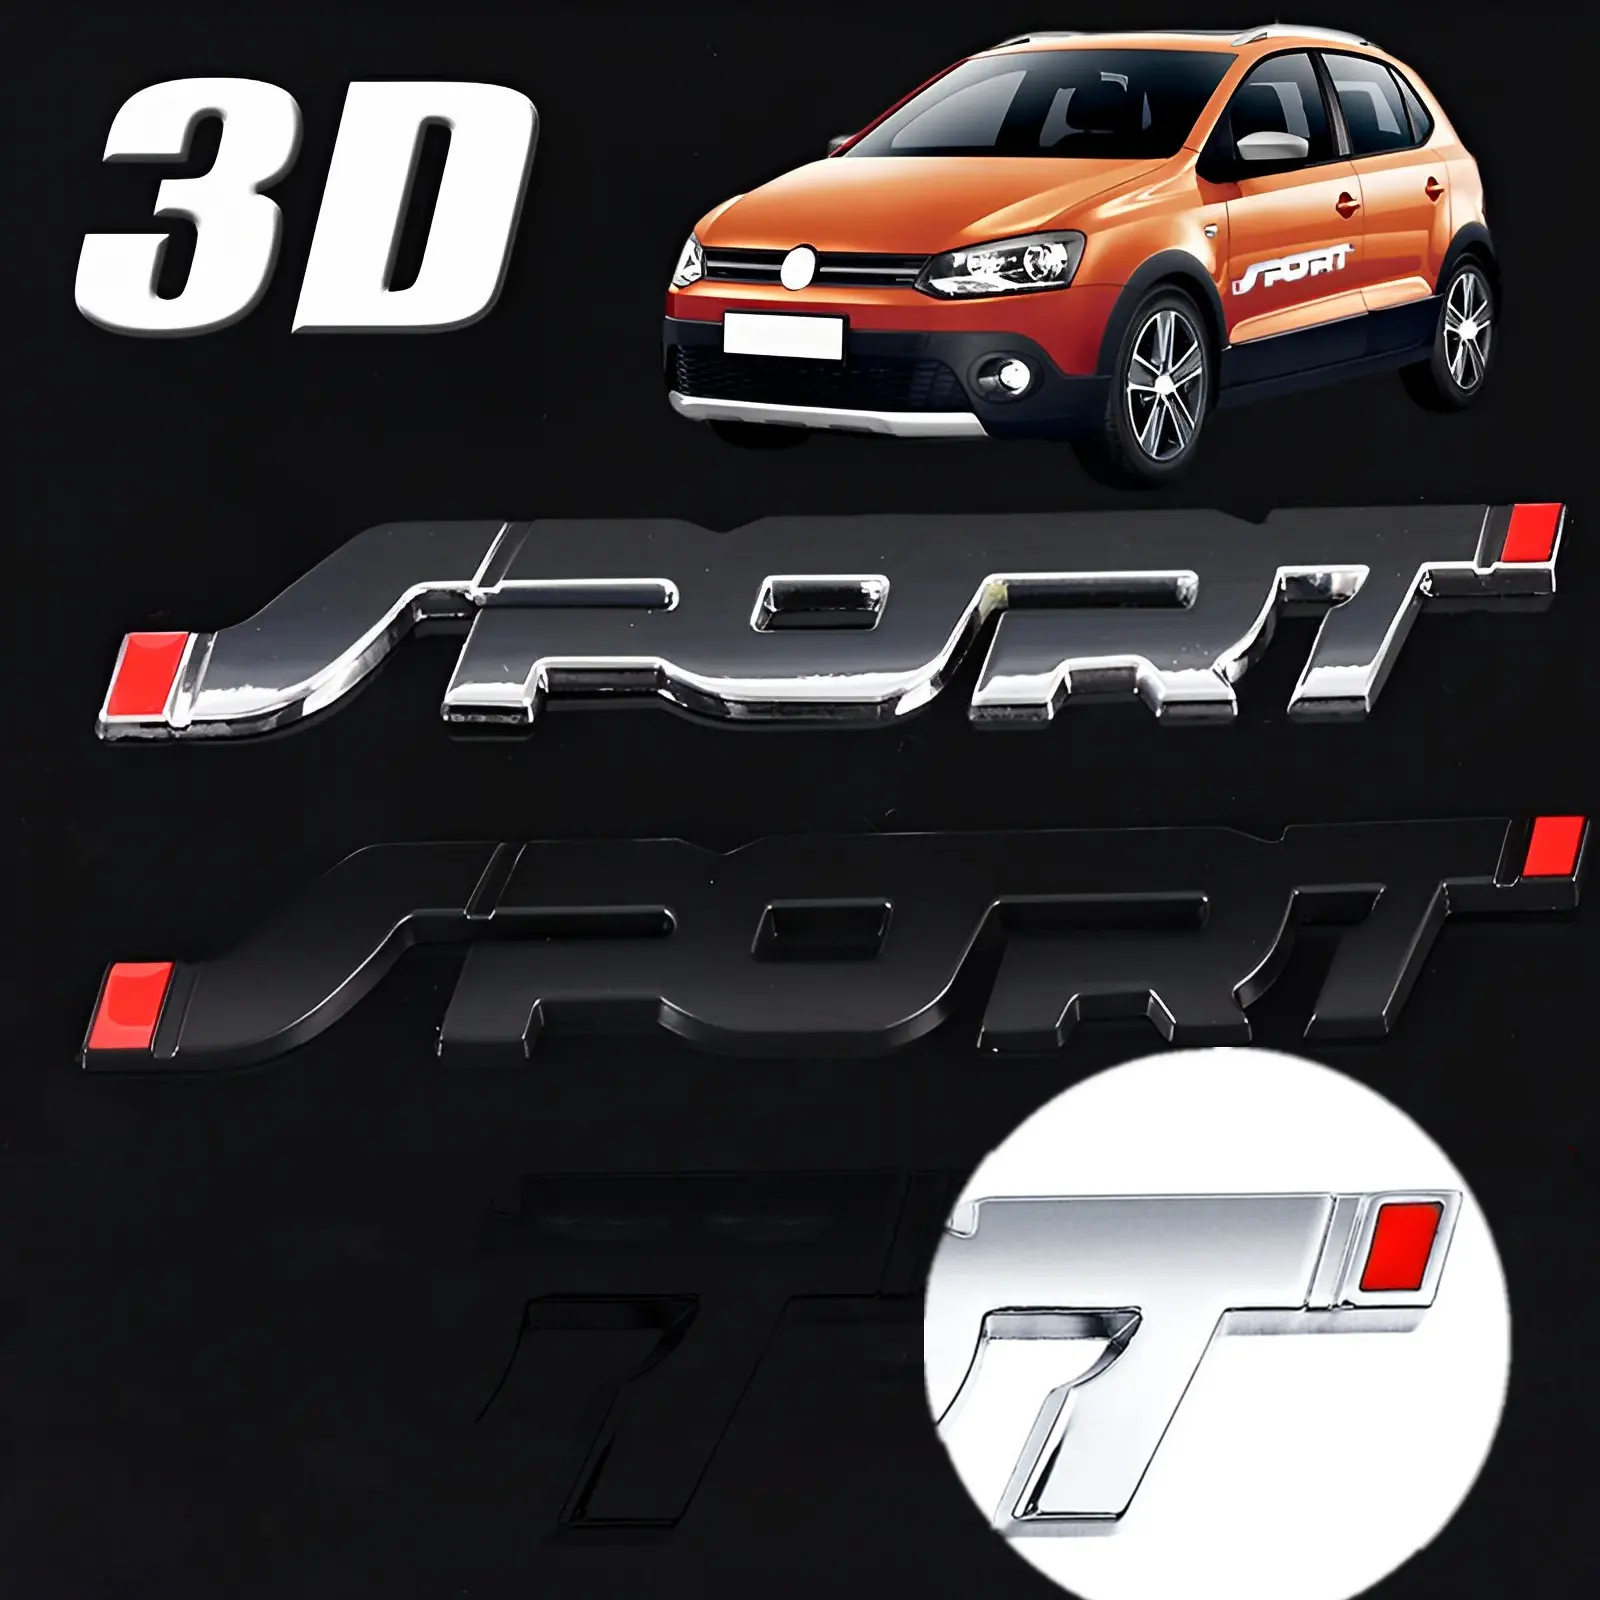 Accessoires de voiture Autocollant Styling Métal 3D Chrome Noir Auto Tronc de voiture Racing Sport Lettre Logo Emblem Badge Decal Sticker